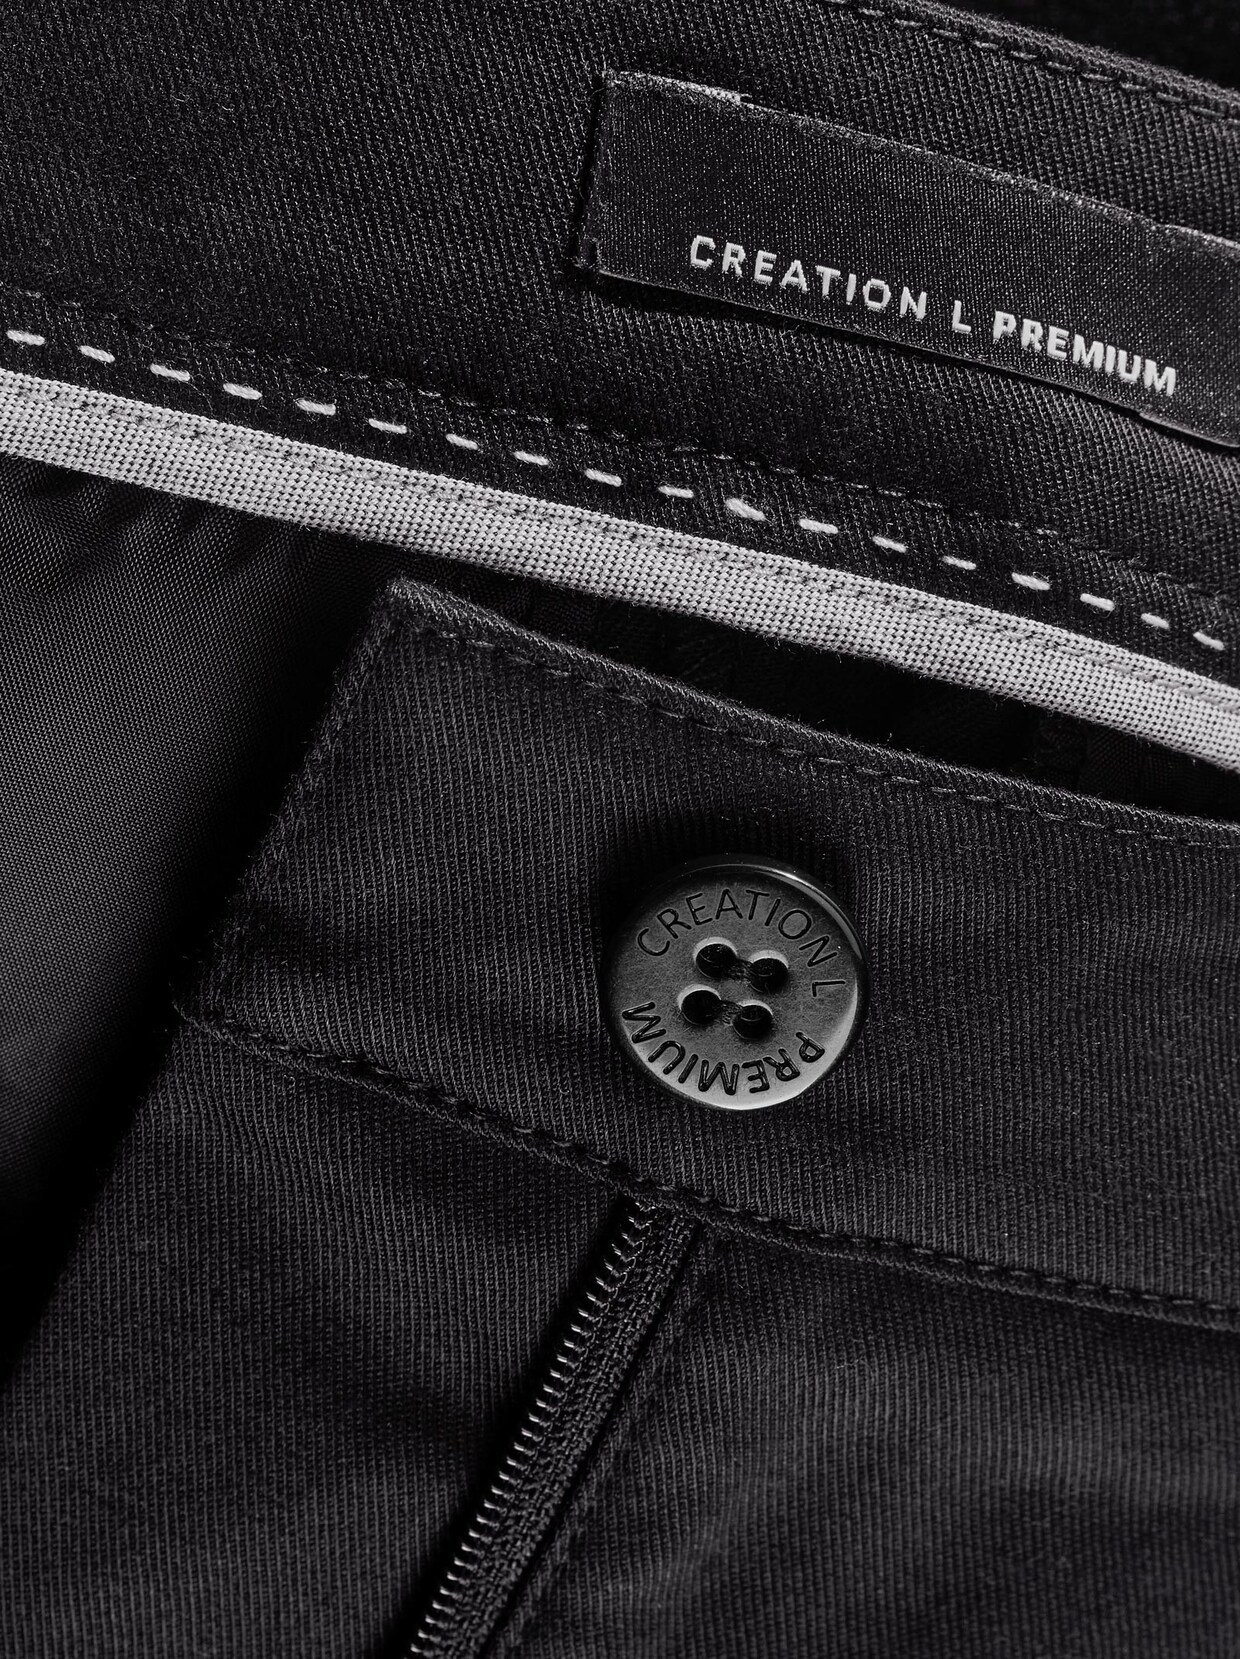 Creation L Premium Lyocell-Baumwoll-Hose - schwarz